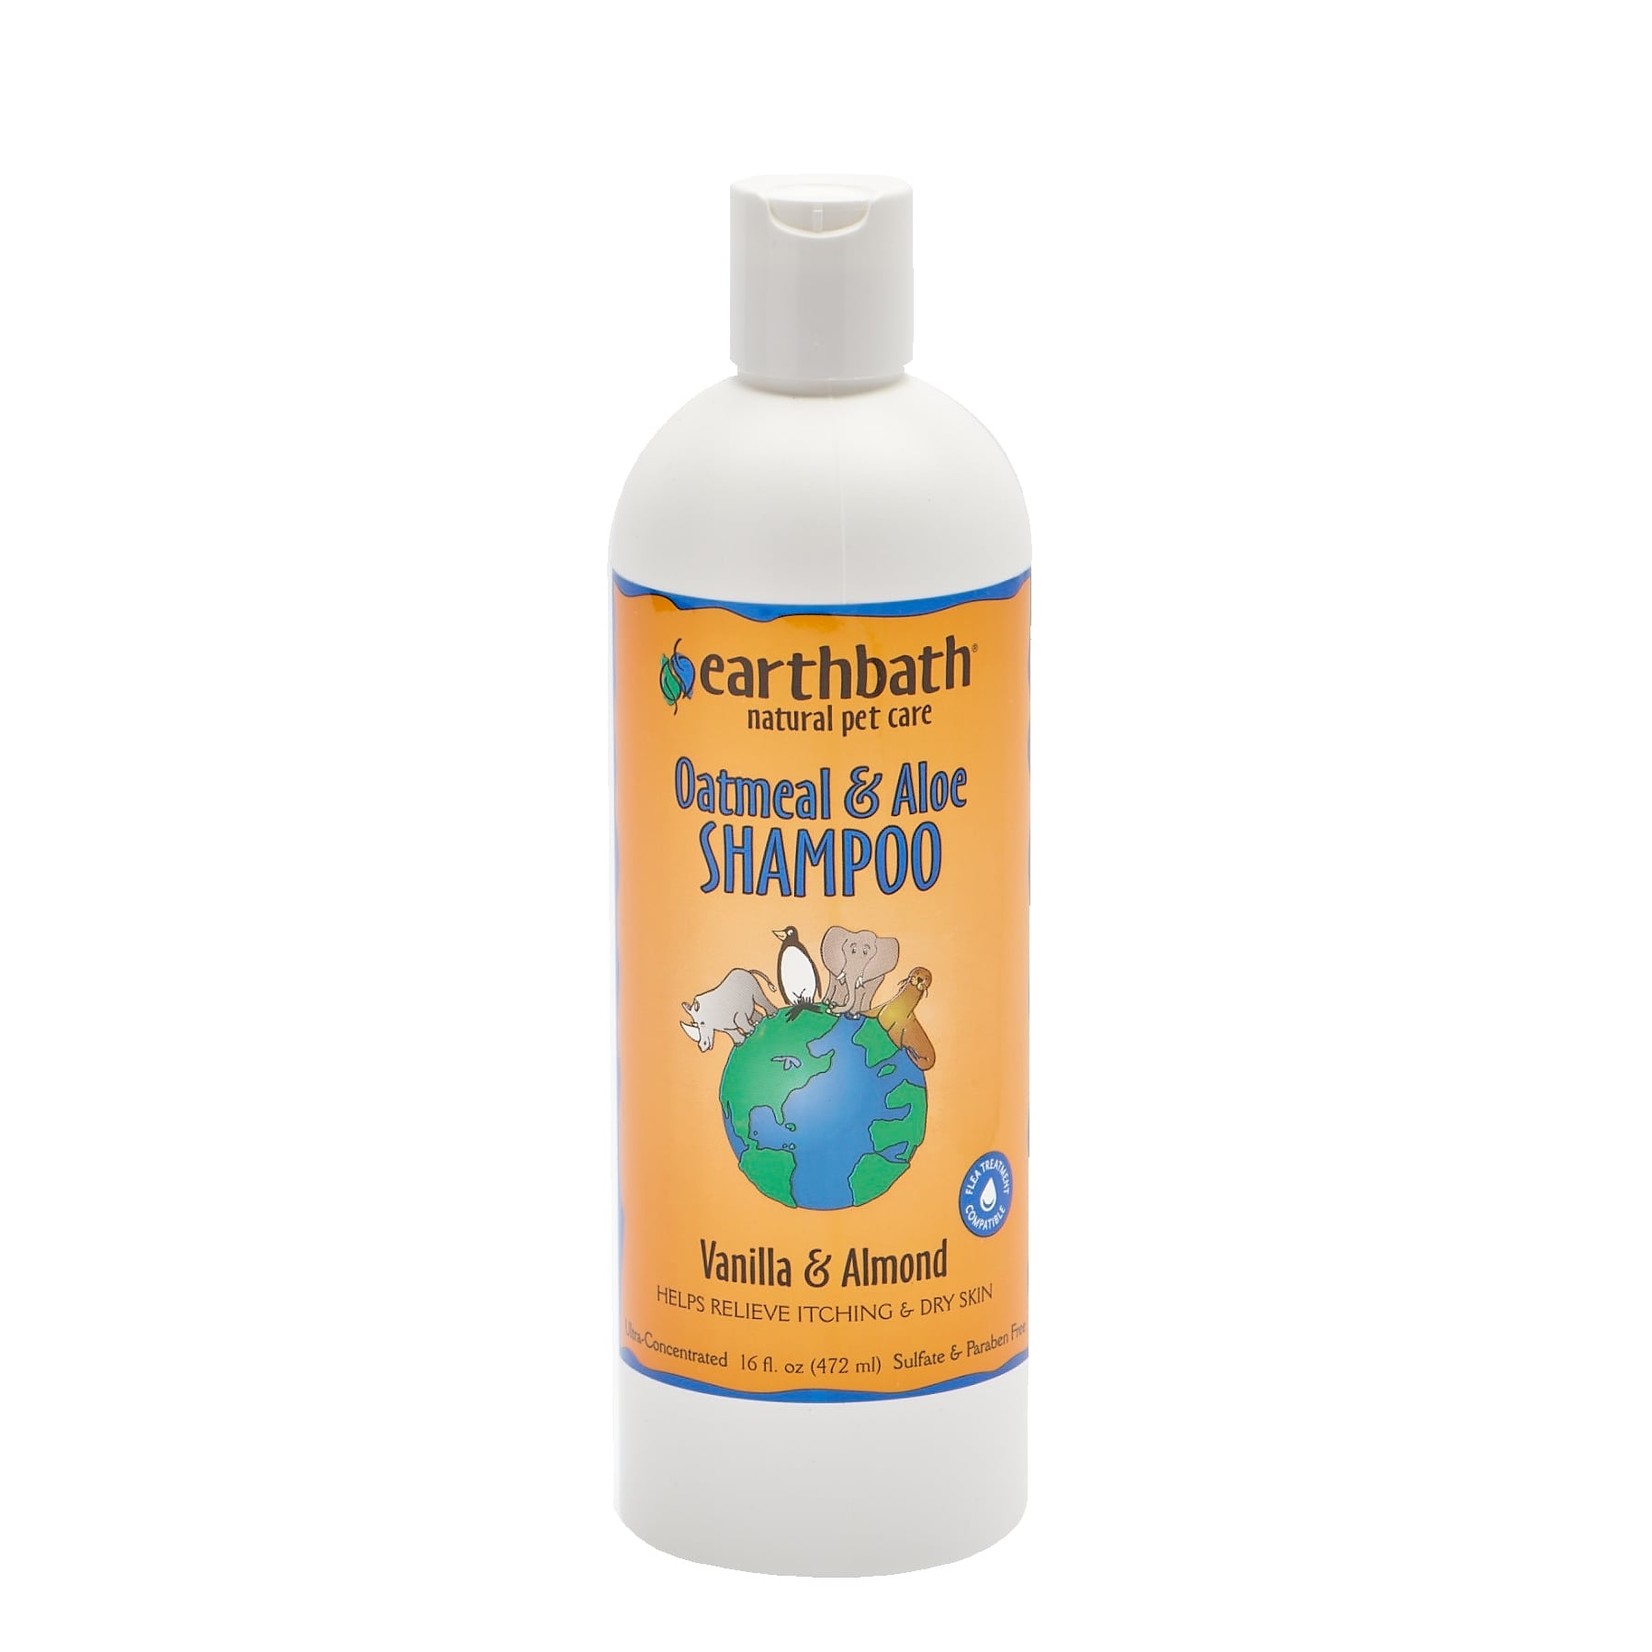 Earthbath Earthbath Oatmeal & Aloe Shampoo for Dogs and Cats Vanilla & Almond Fragrance 16oz